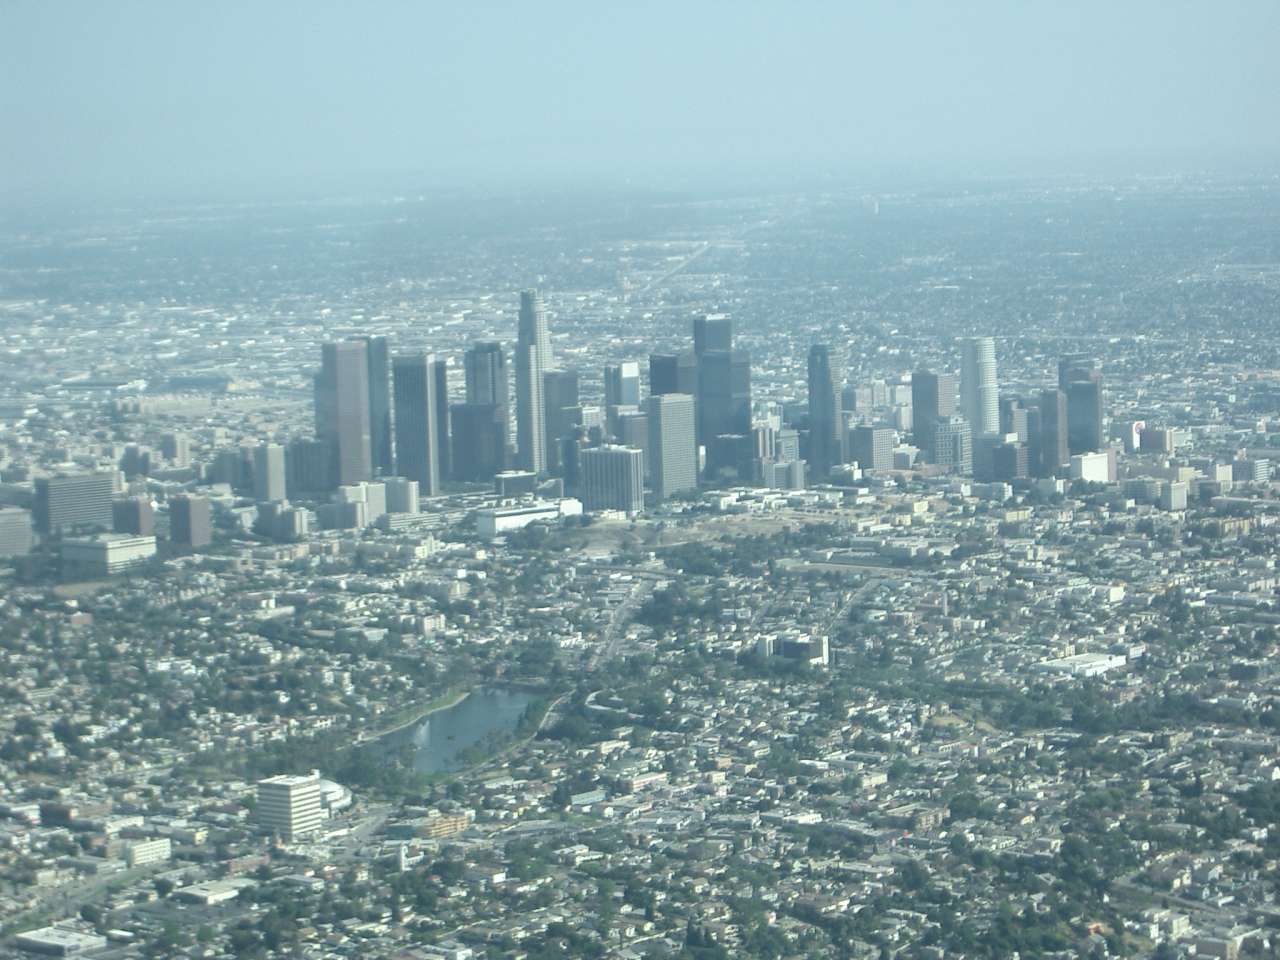 Downtown LA